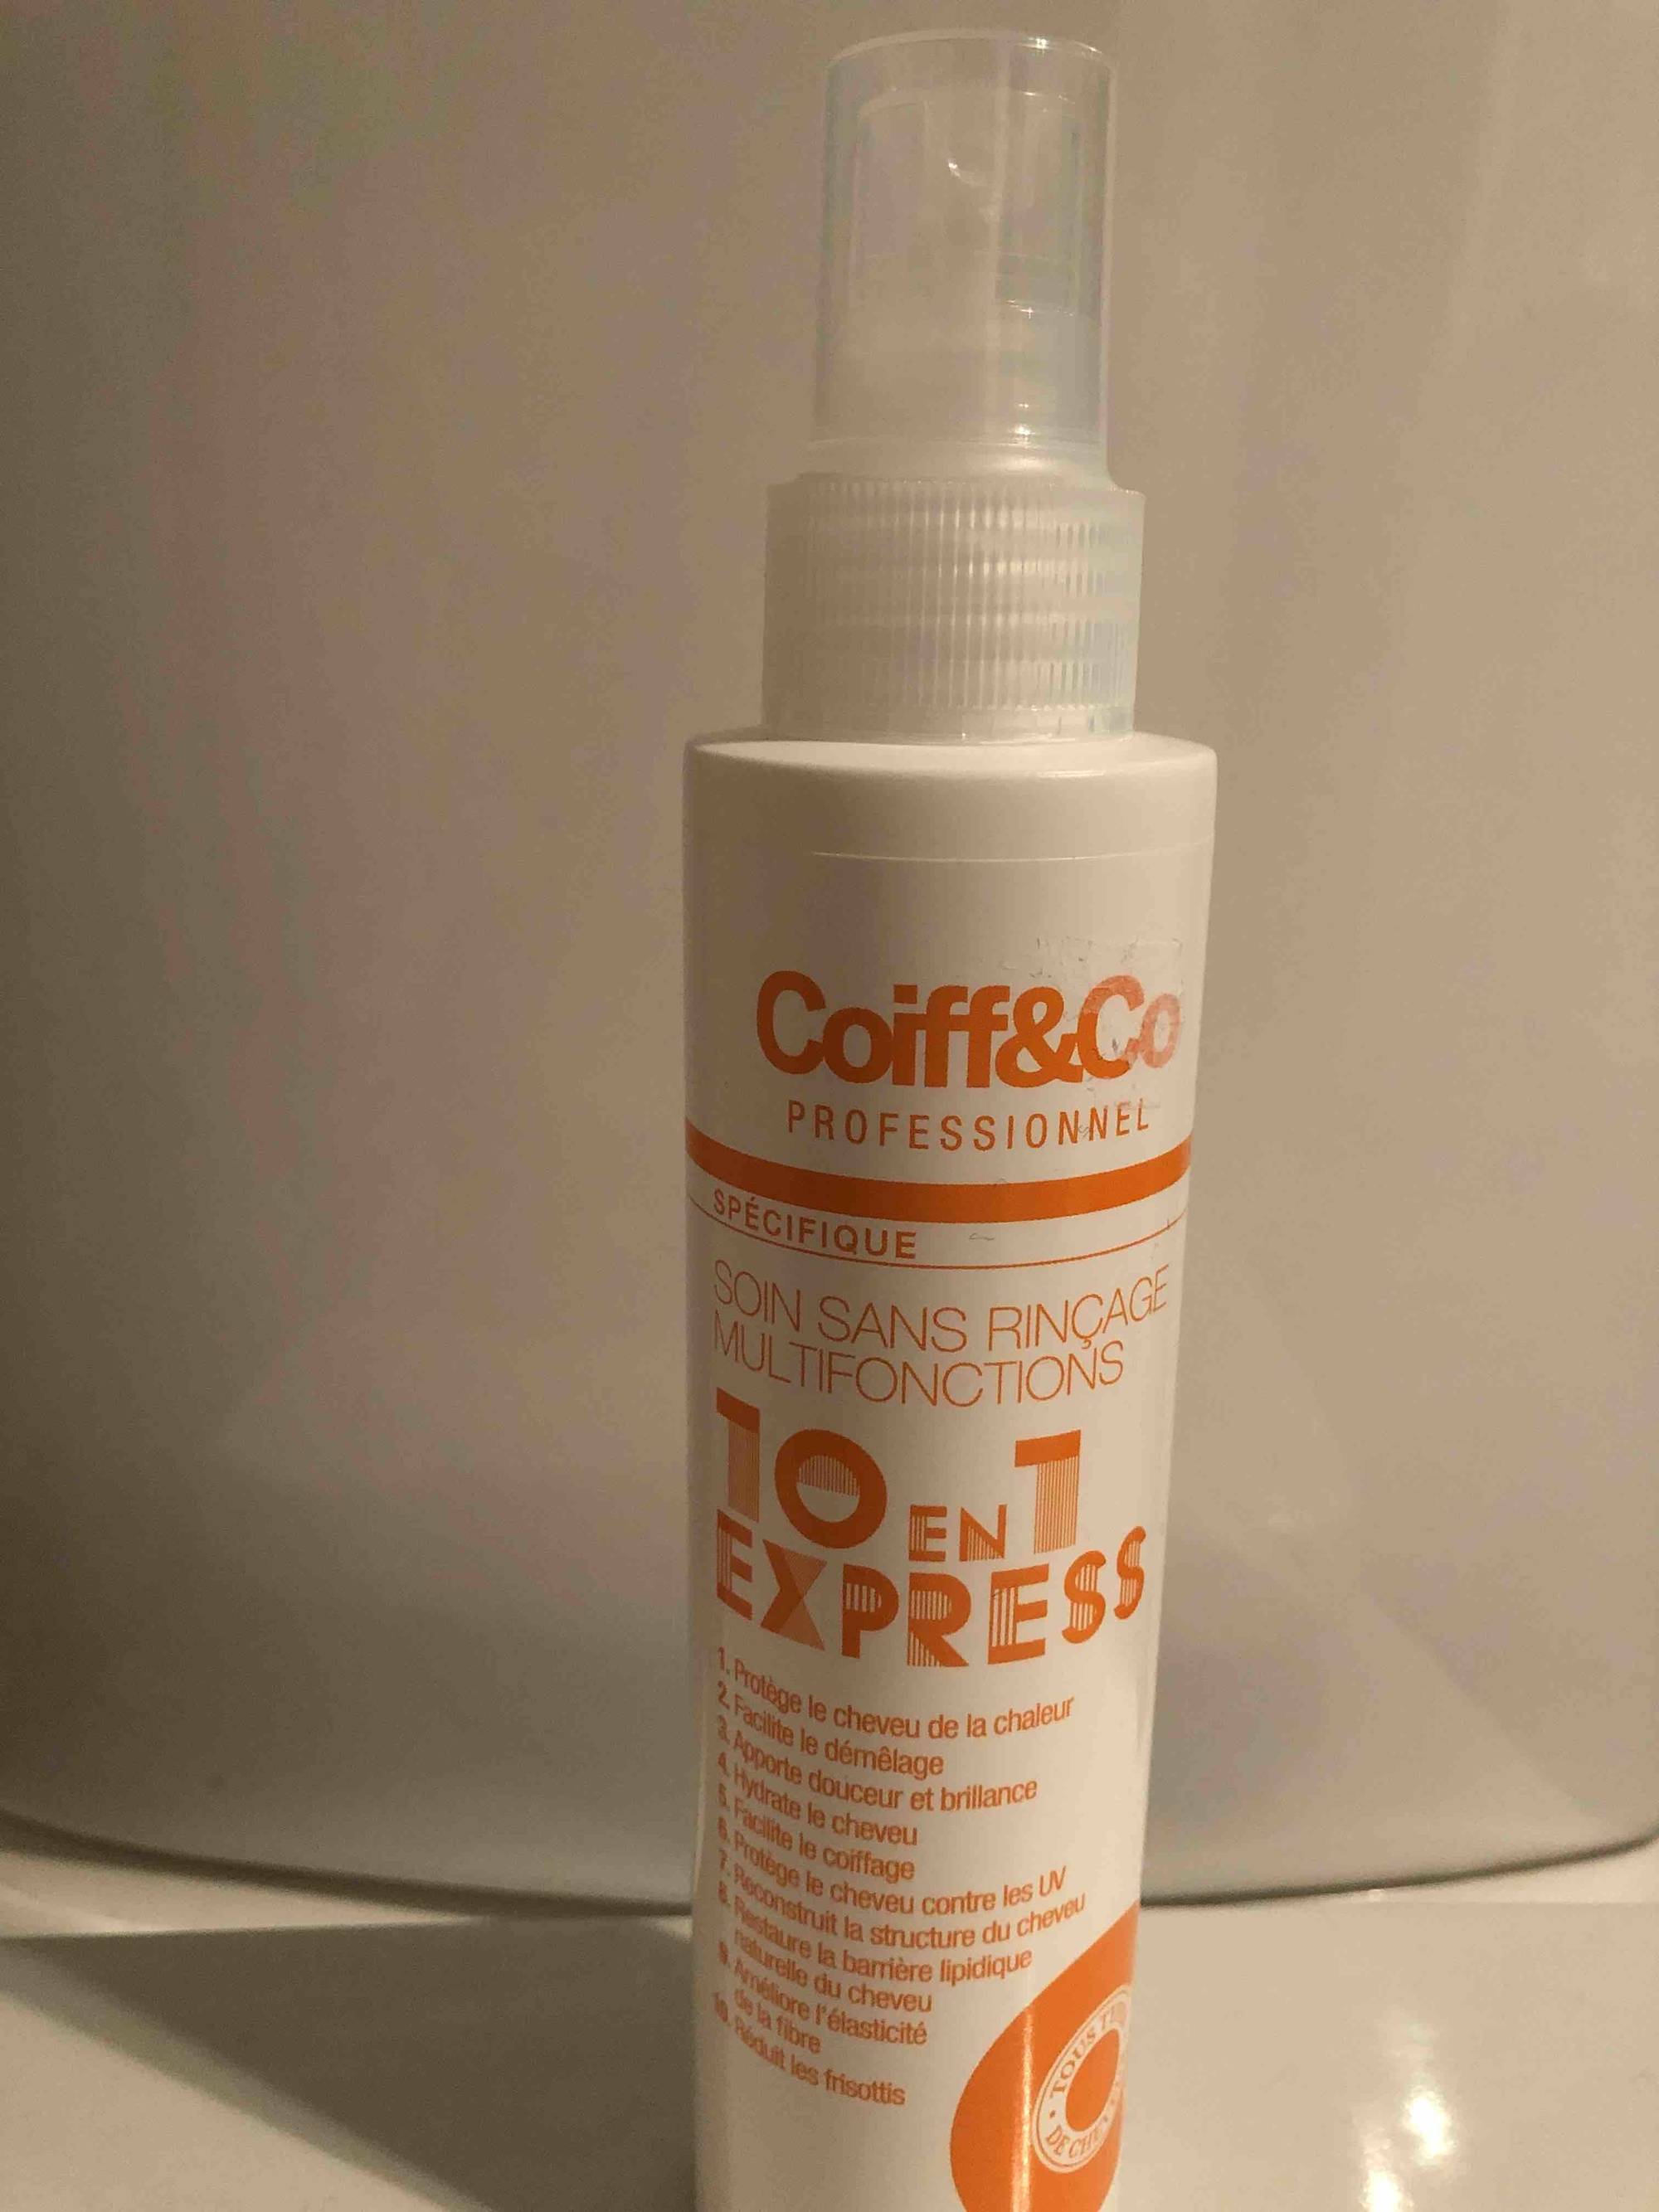 COIFF&CO PROFESSIONNEL - 10 en 1 Express - Soins sans rinçage multifonctions